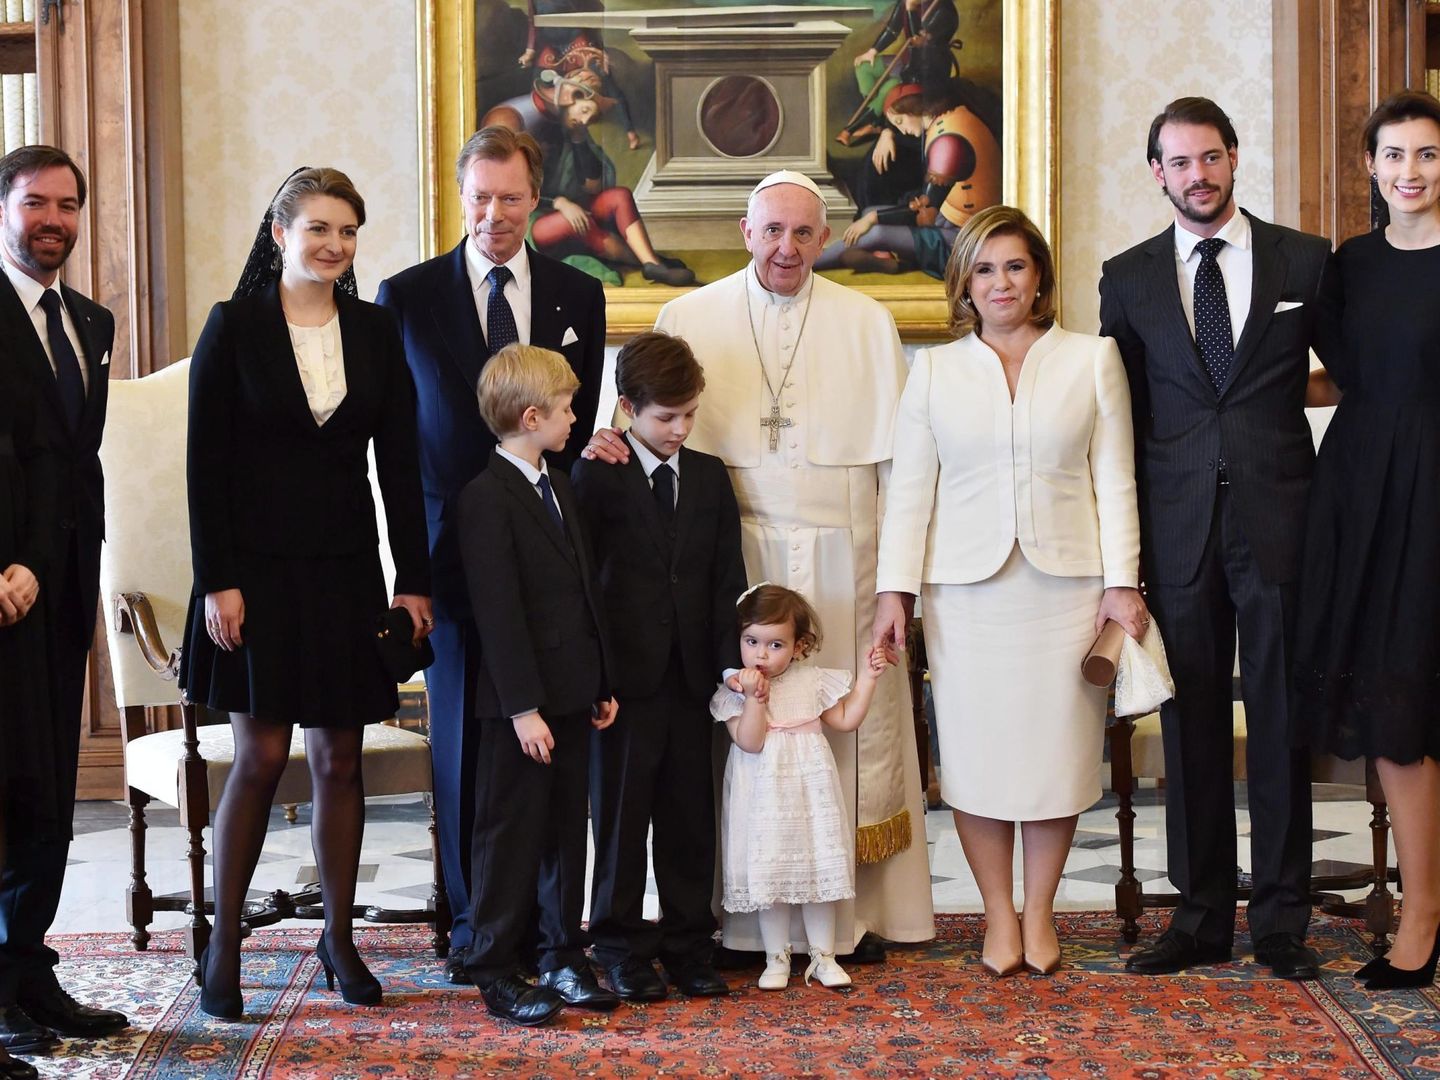 Audiencia de la familia ducal de Luxemburgo (Tessy, a la izquierda) con el Papa Francisco. (EFE)